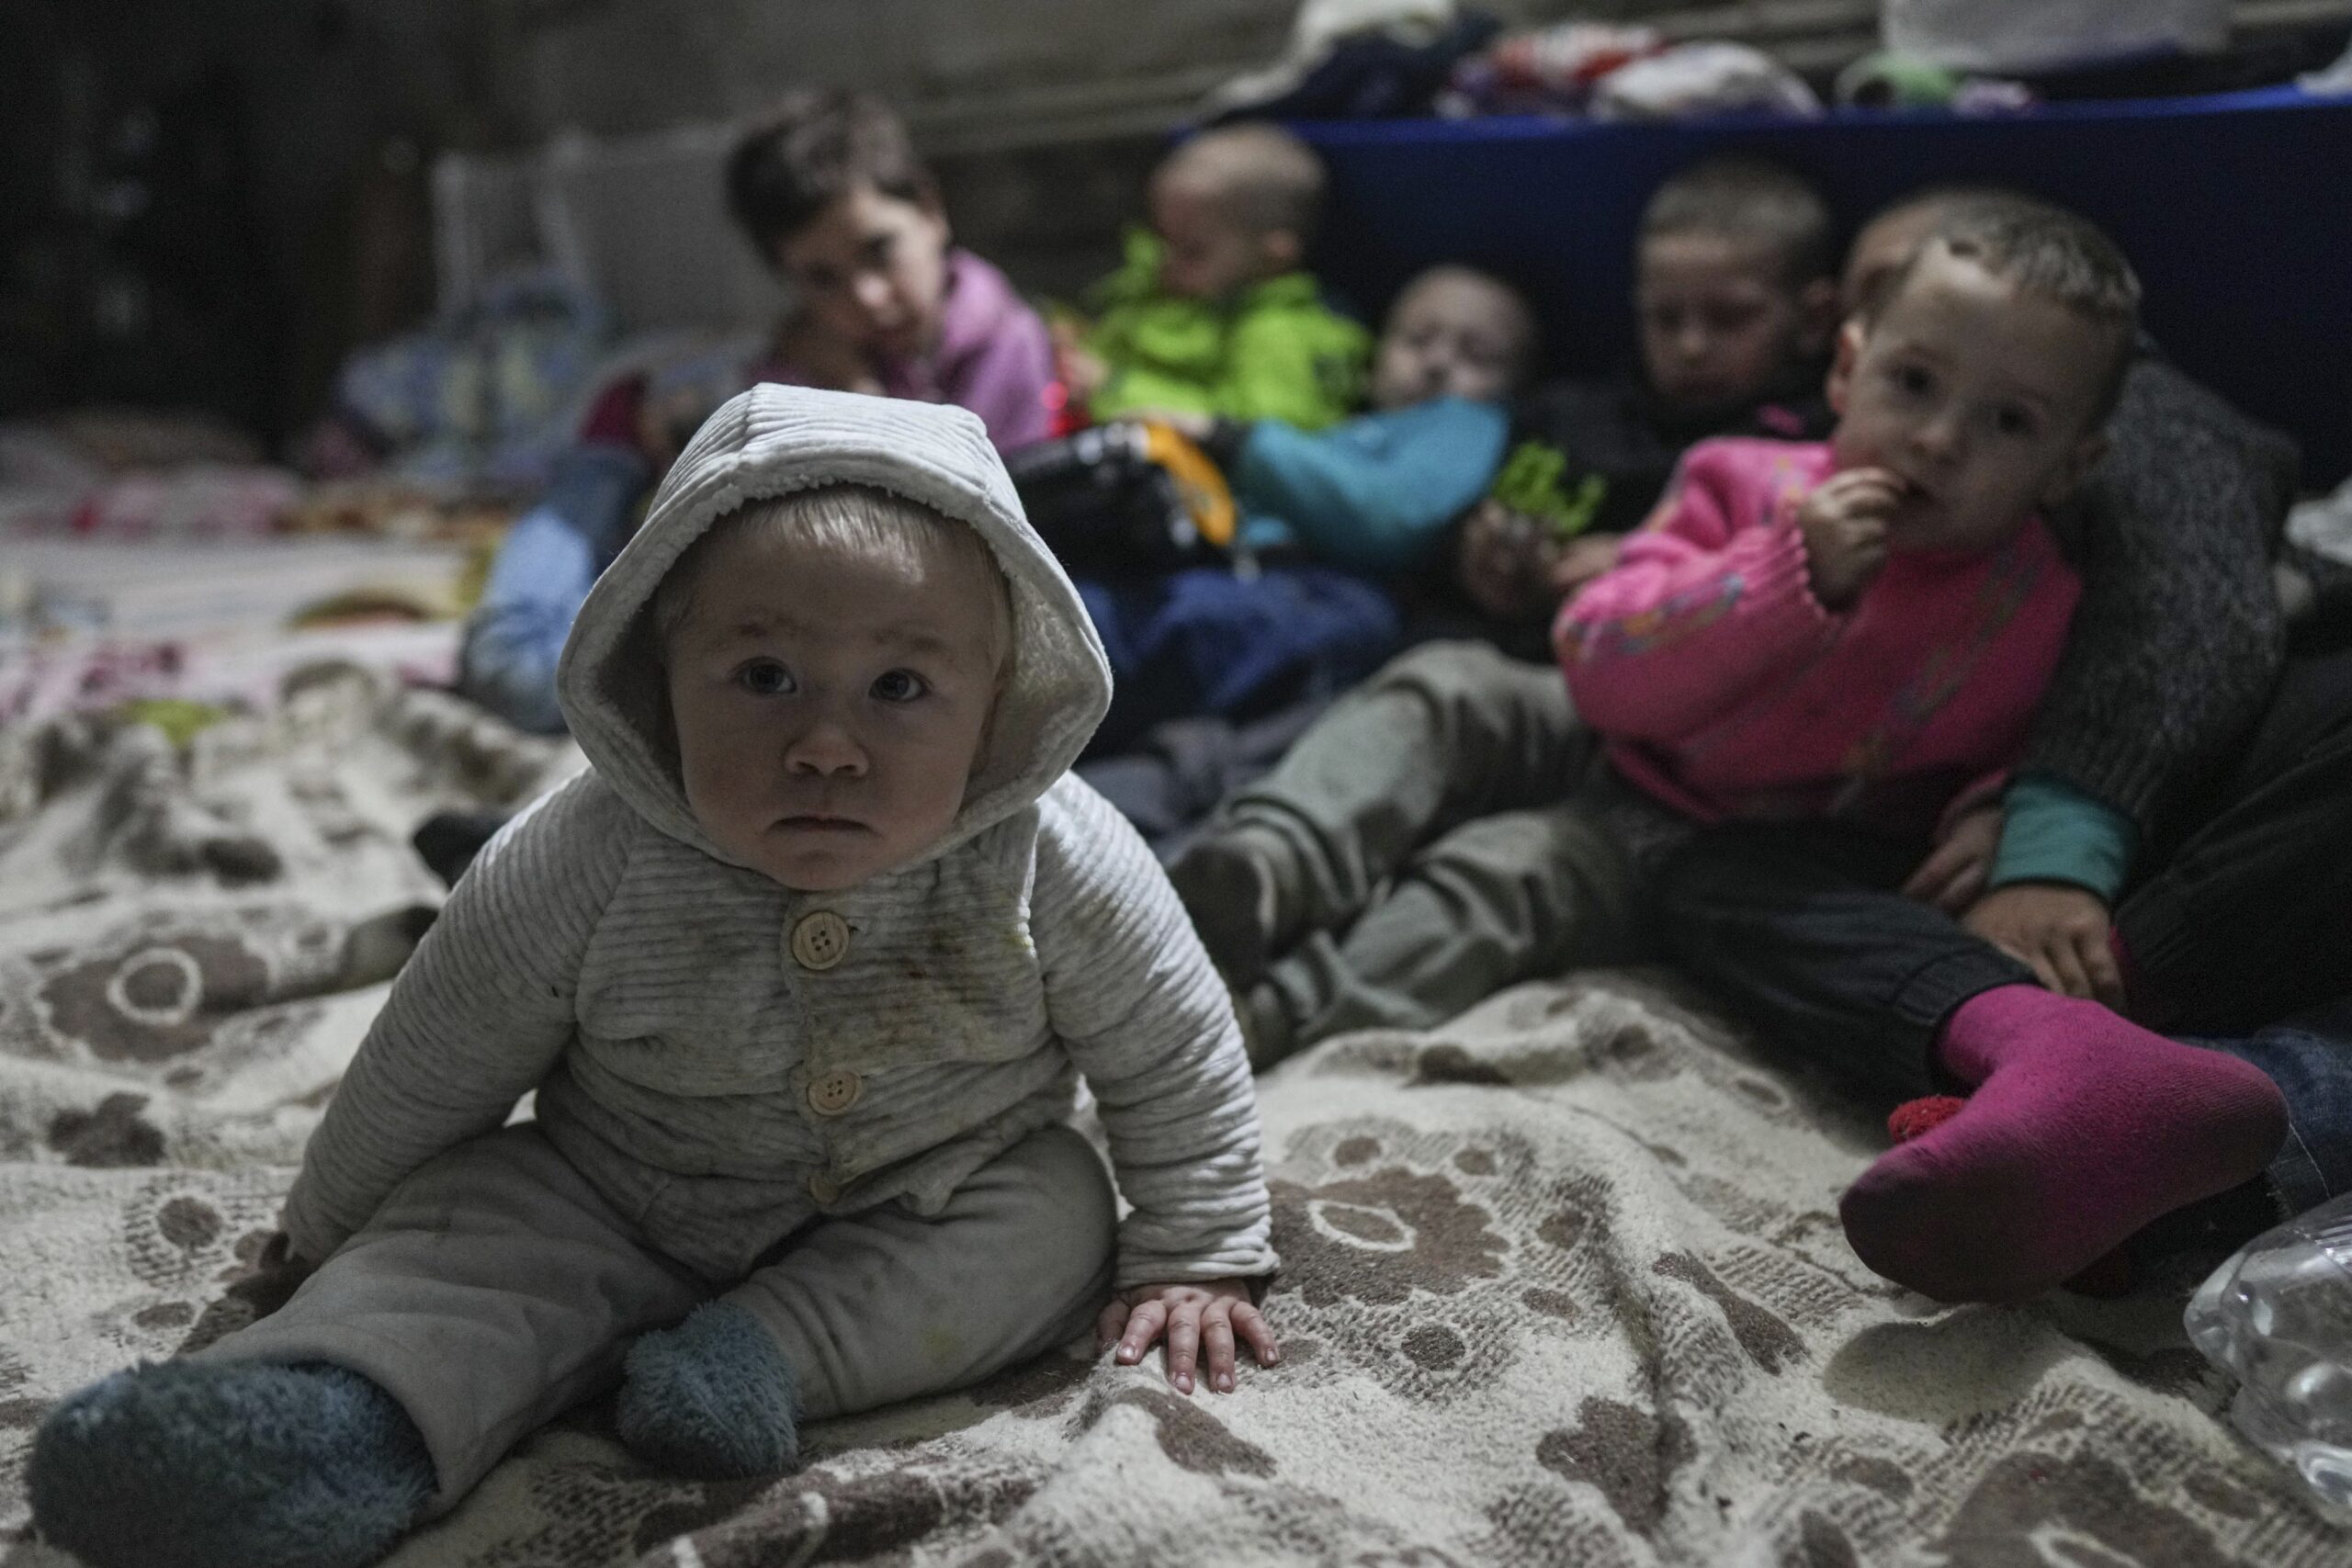 L'Onu chiede alla Russia di consentire la visita ai bambini deportati con la forza" dall'Ucraina